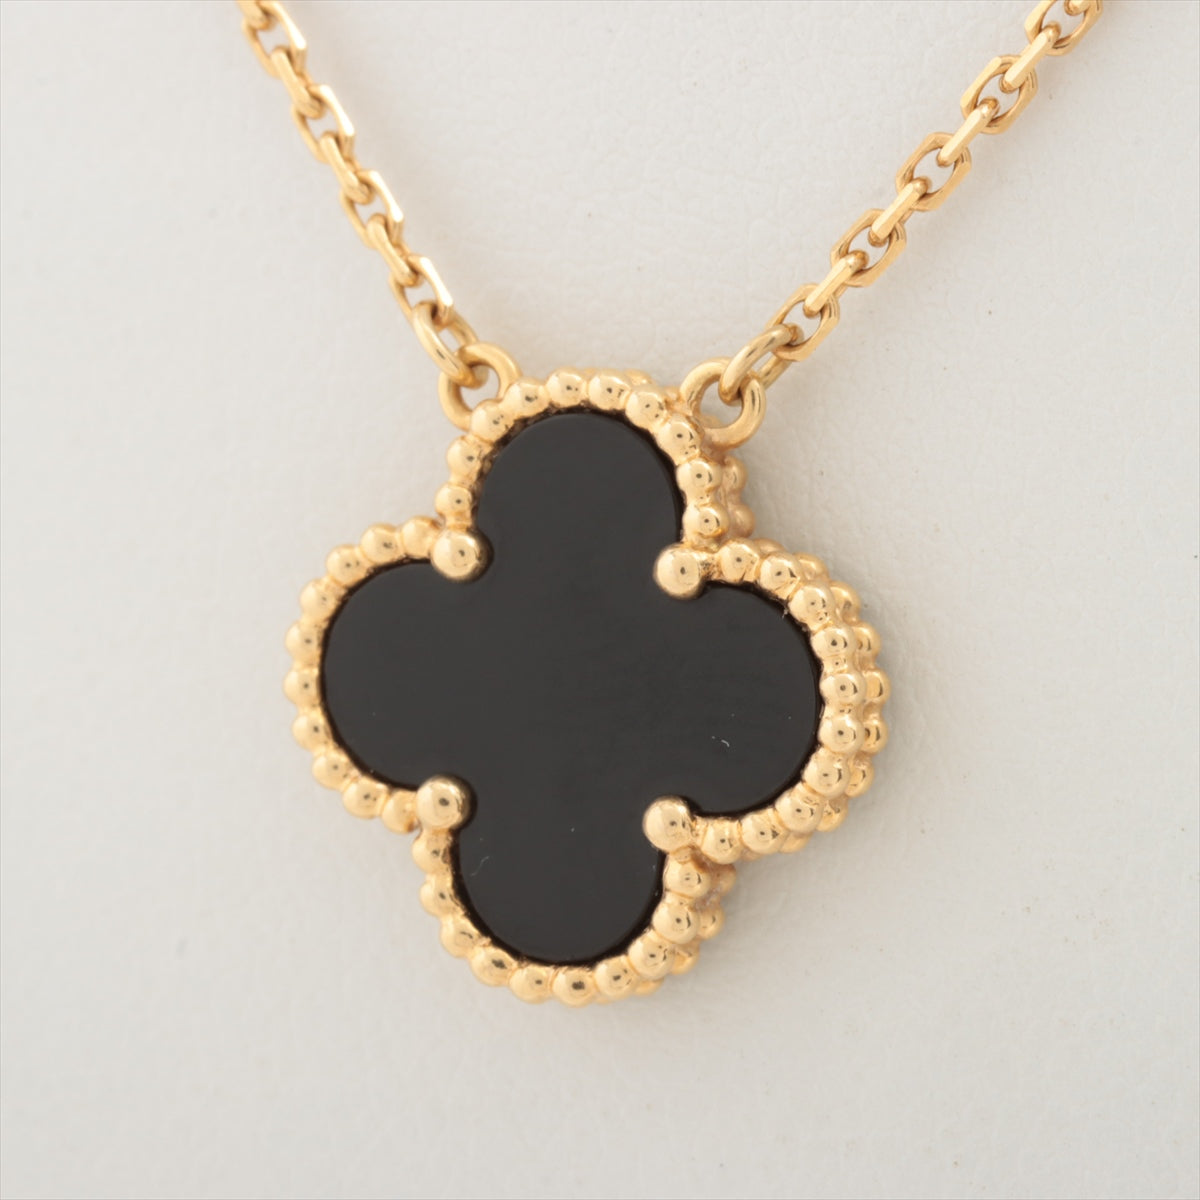 Van Cleef & Arpels Vintage Alhambra Onyx Necklace 750 (YG) 5.1g